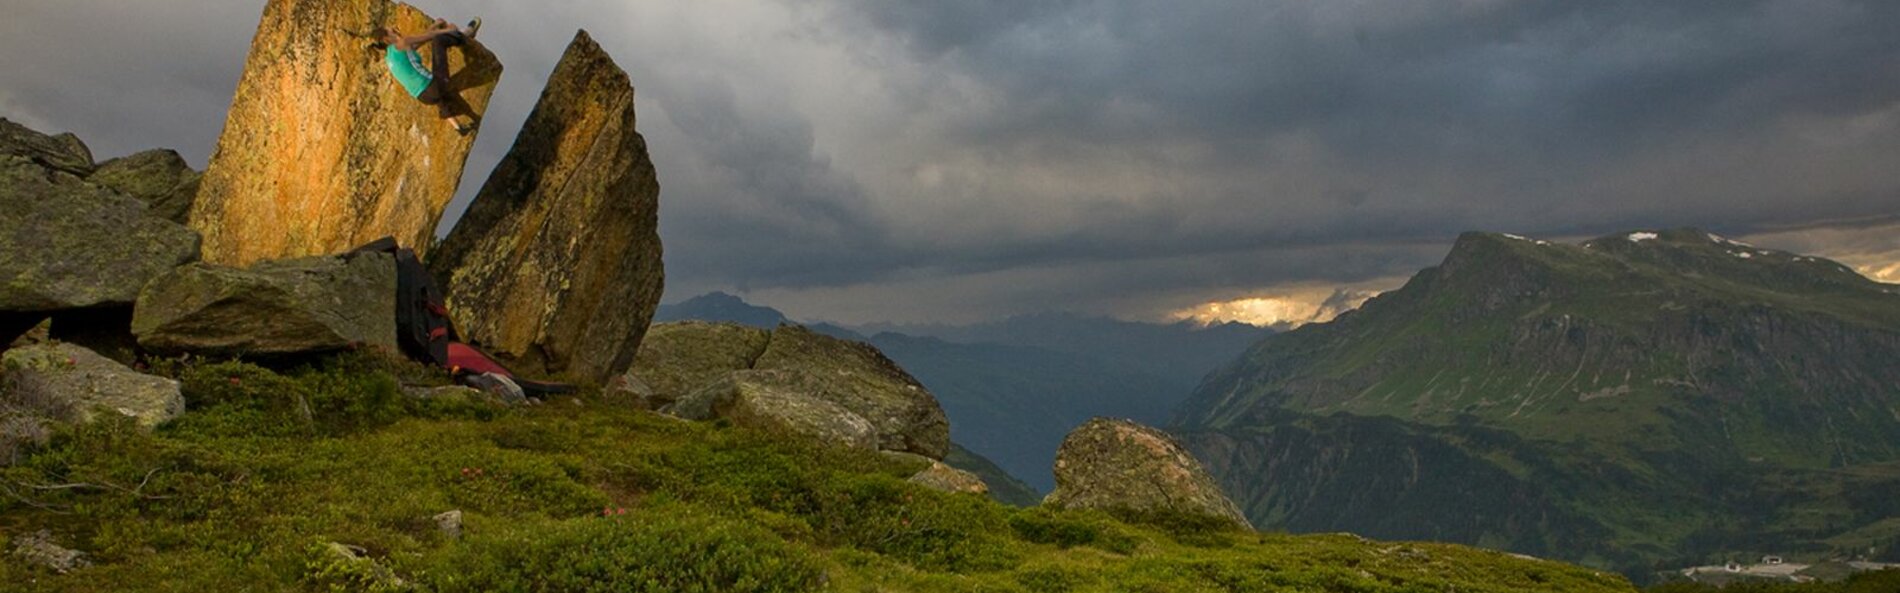 Eine Frau erklimmt einen kleinen Felsen. Im Hintergrund sieht man mehrere Berge und die Szene wird von Gewitterwolken geprägt.